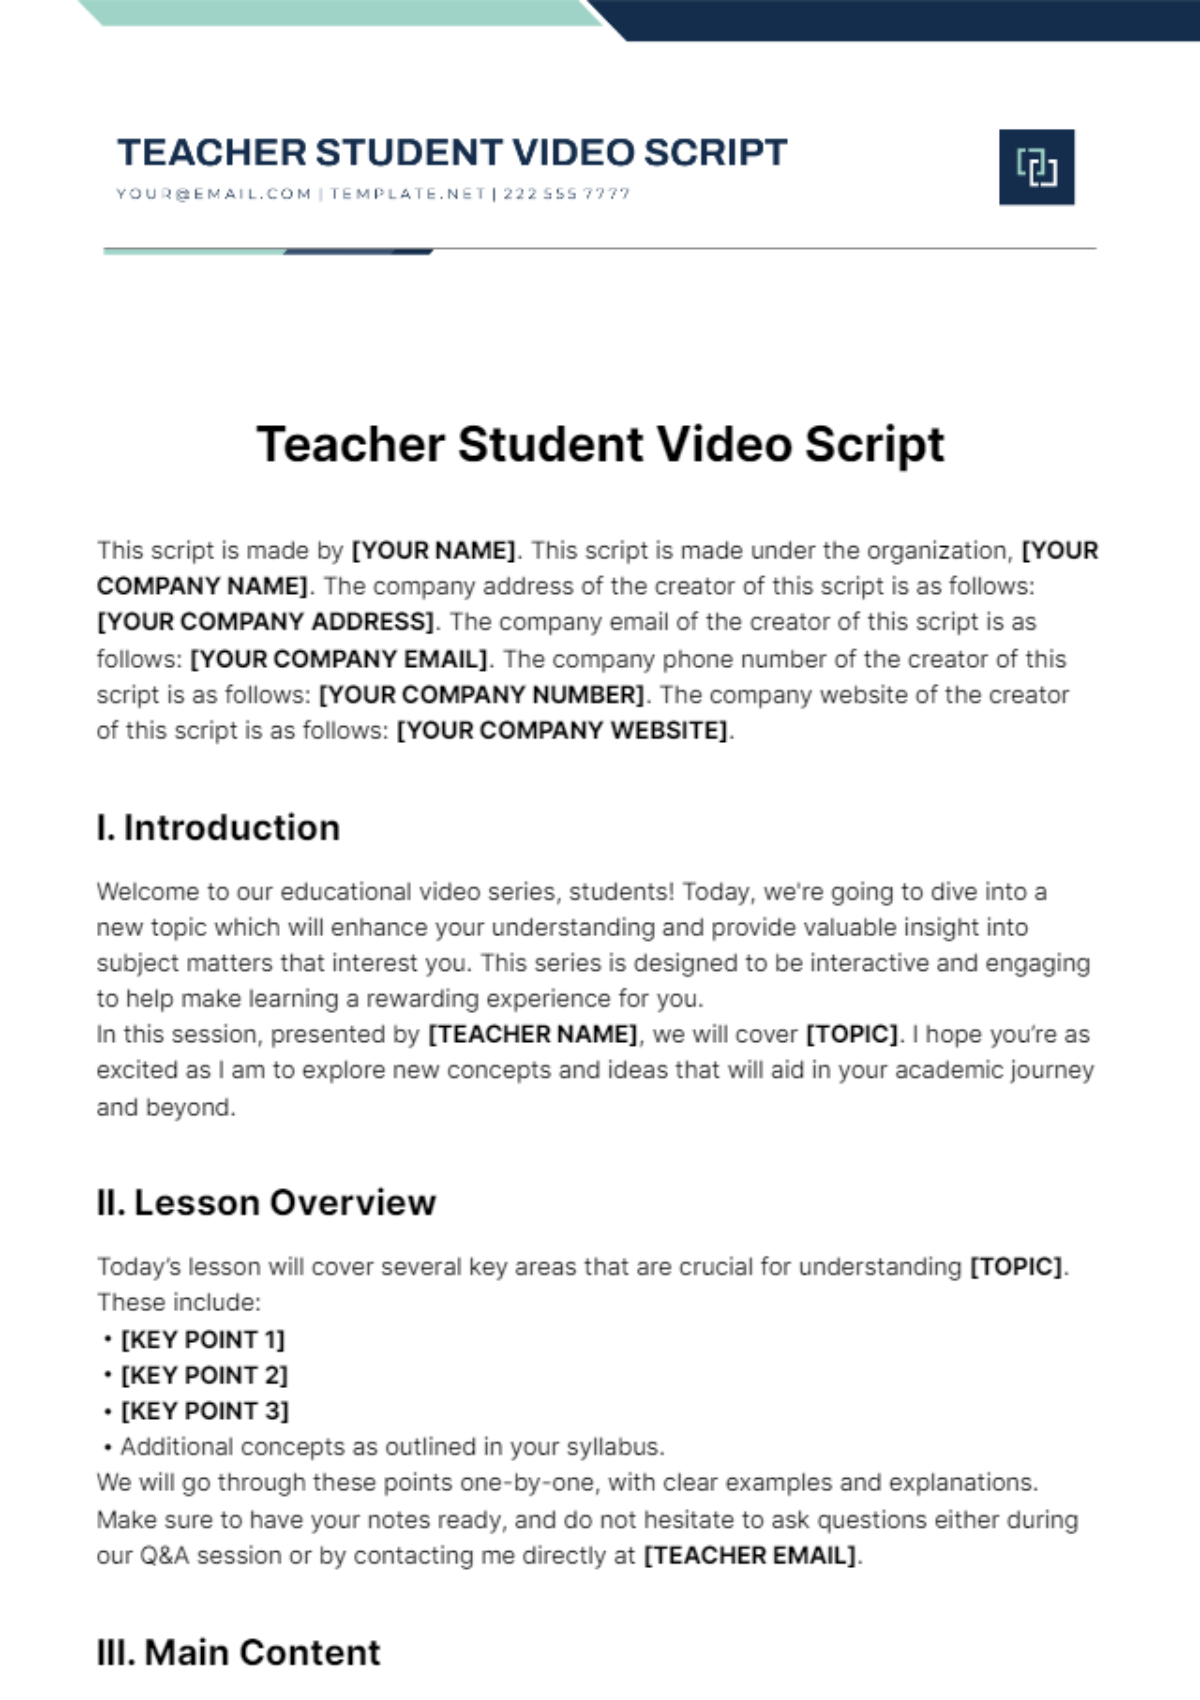 Teacher Student Video Script Template